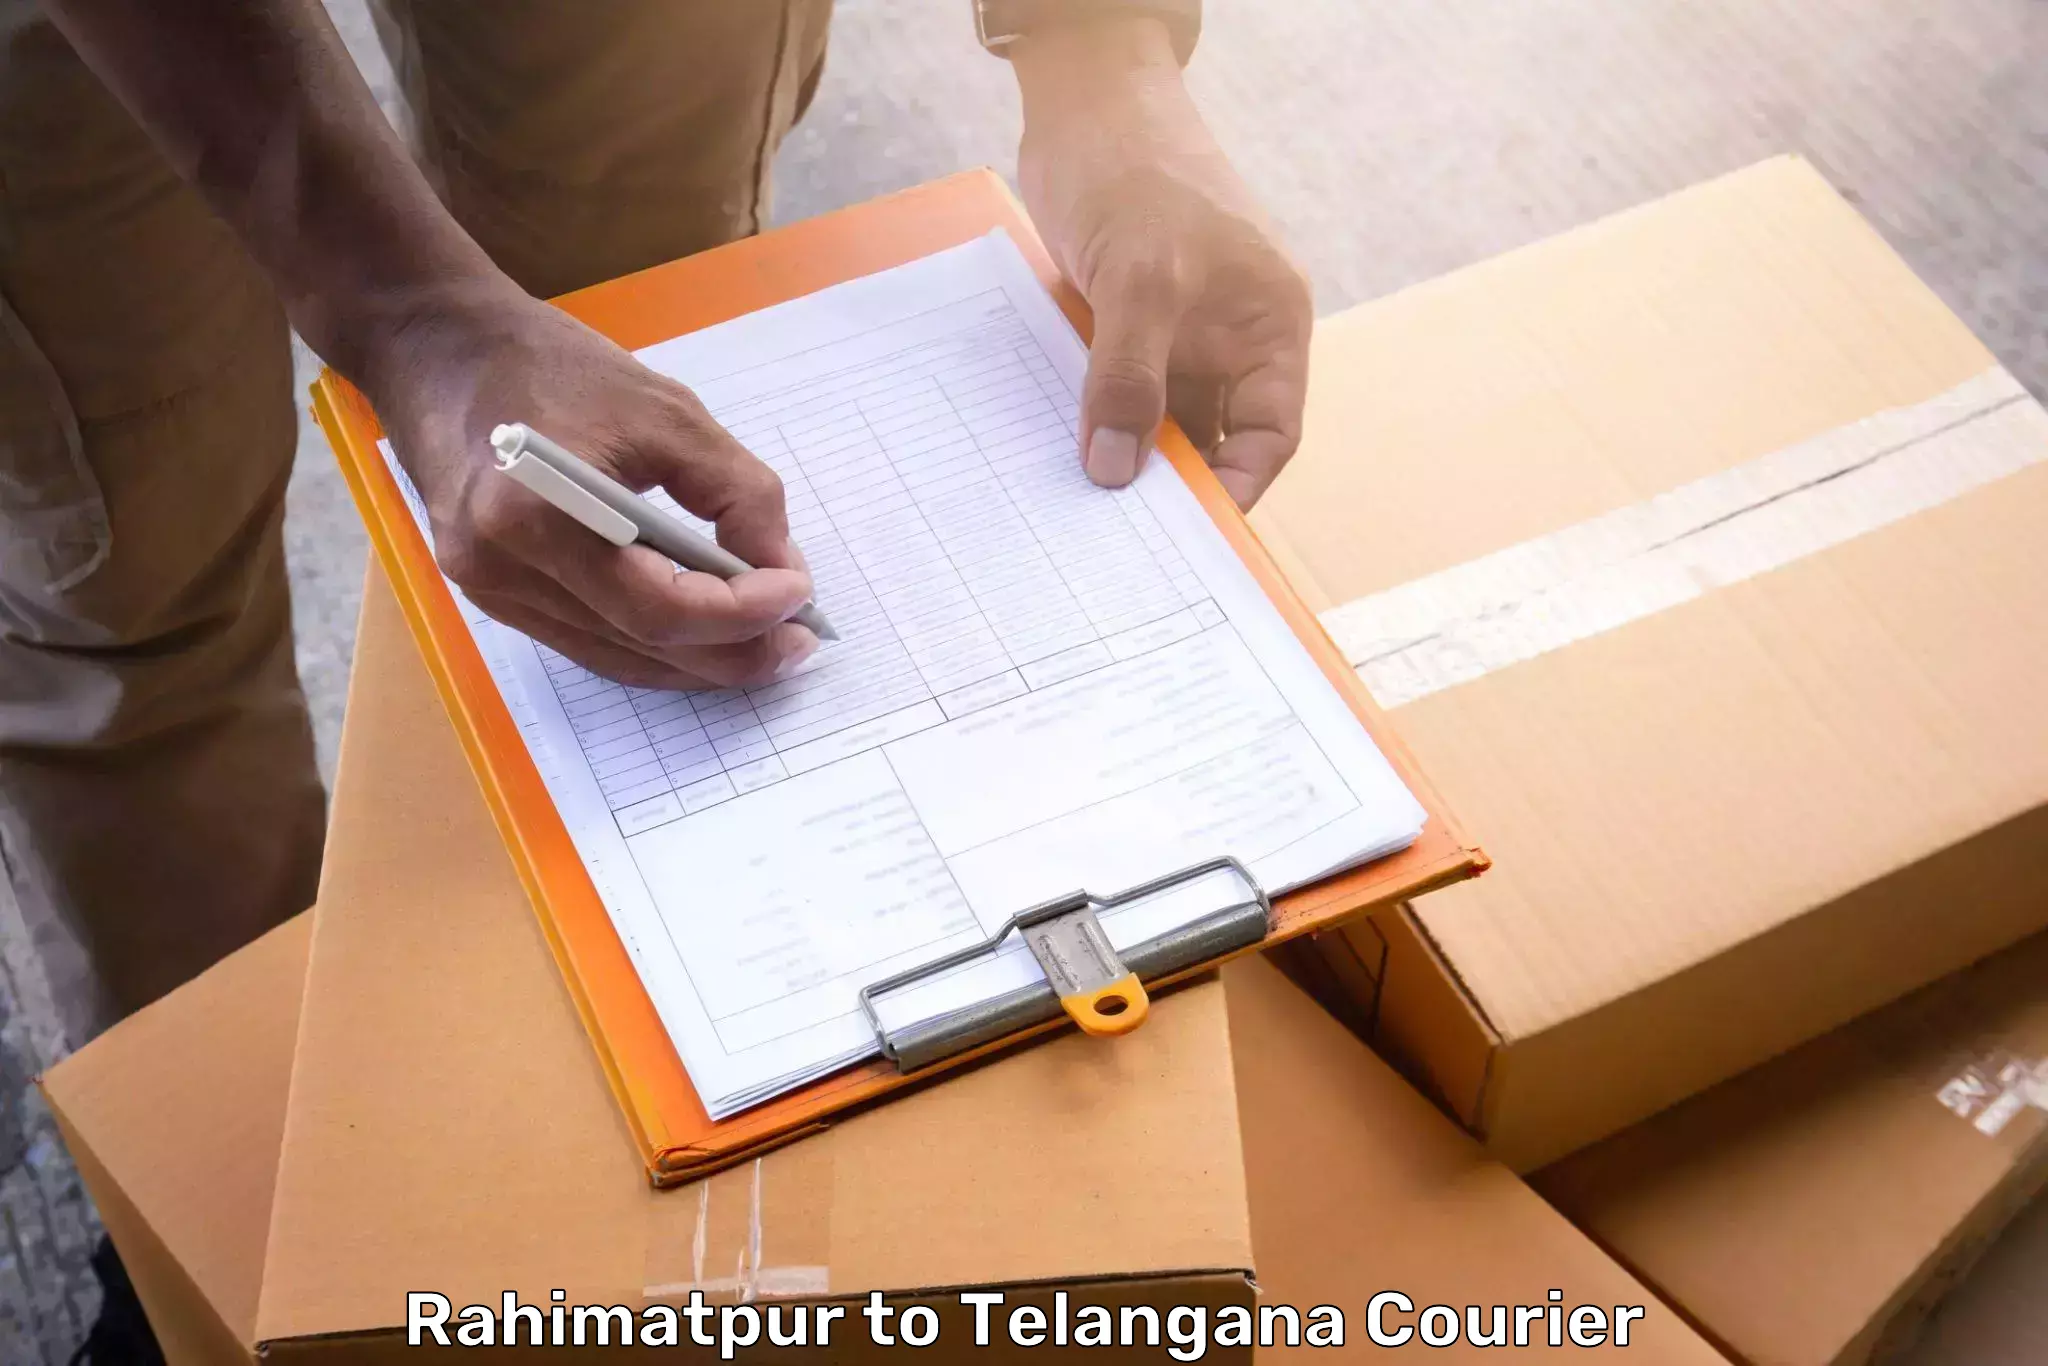 Door-to-door baggage service Rahimatpur to Bejjanki